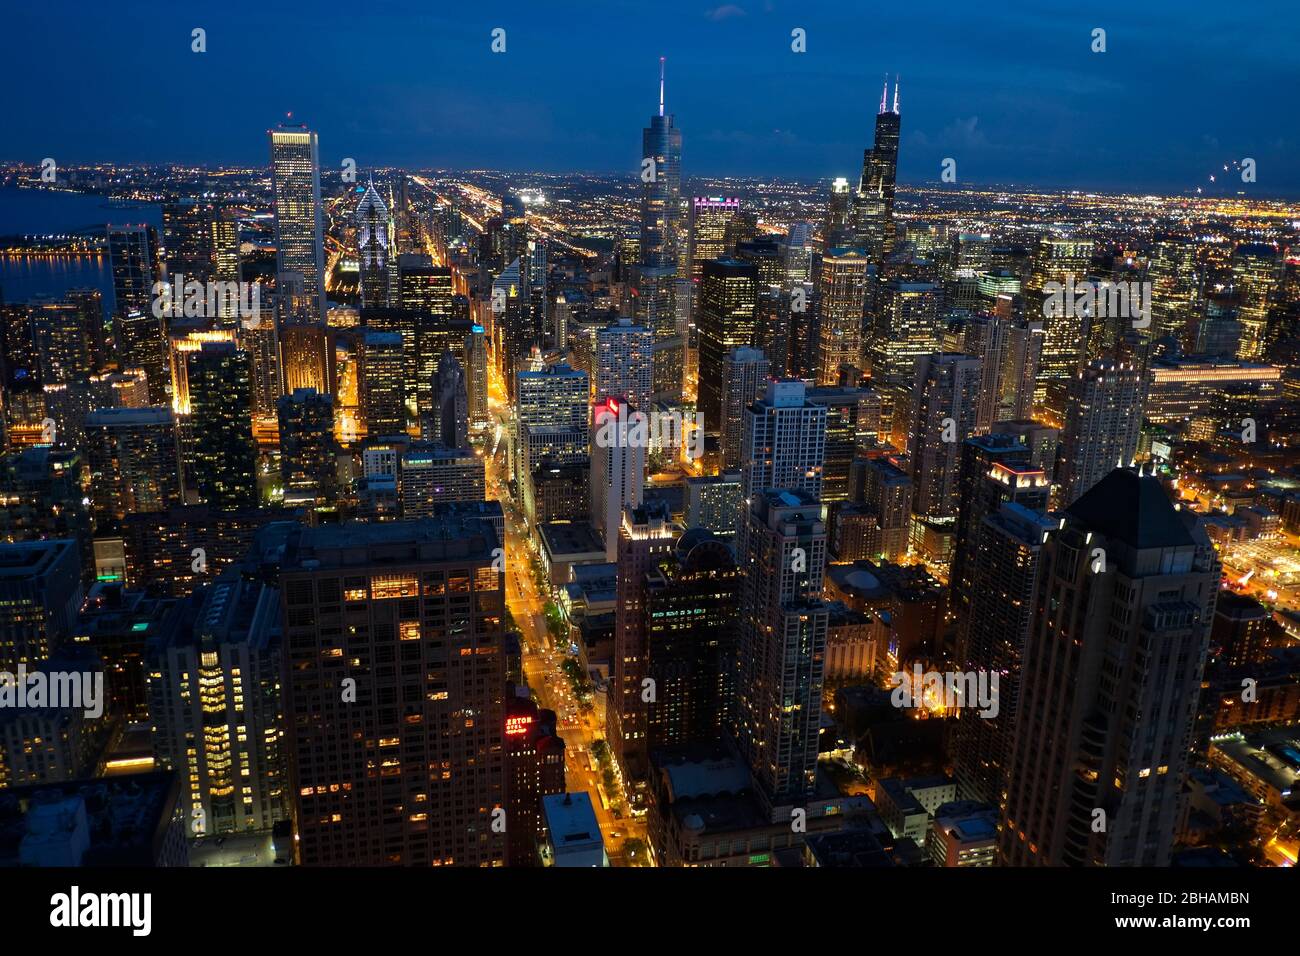 Torres de oficinas del centro de Chicago fotografiadas desde el Observatorio John Hancock. Willis Tower, anteriormente Sears Tower, diseñado por el arquitecto Fazlur Rahman Khan, una vez el rascacielos más alto del mundo, está en el centro derecho Foto de stock